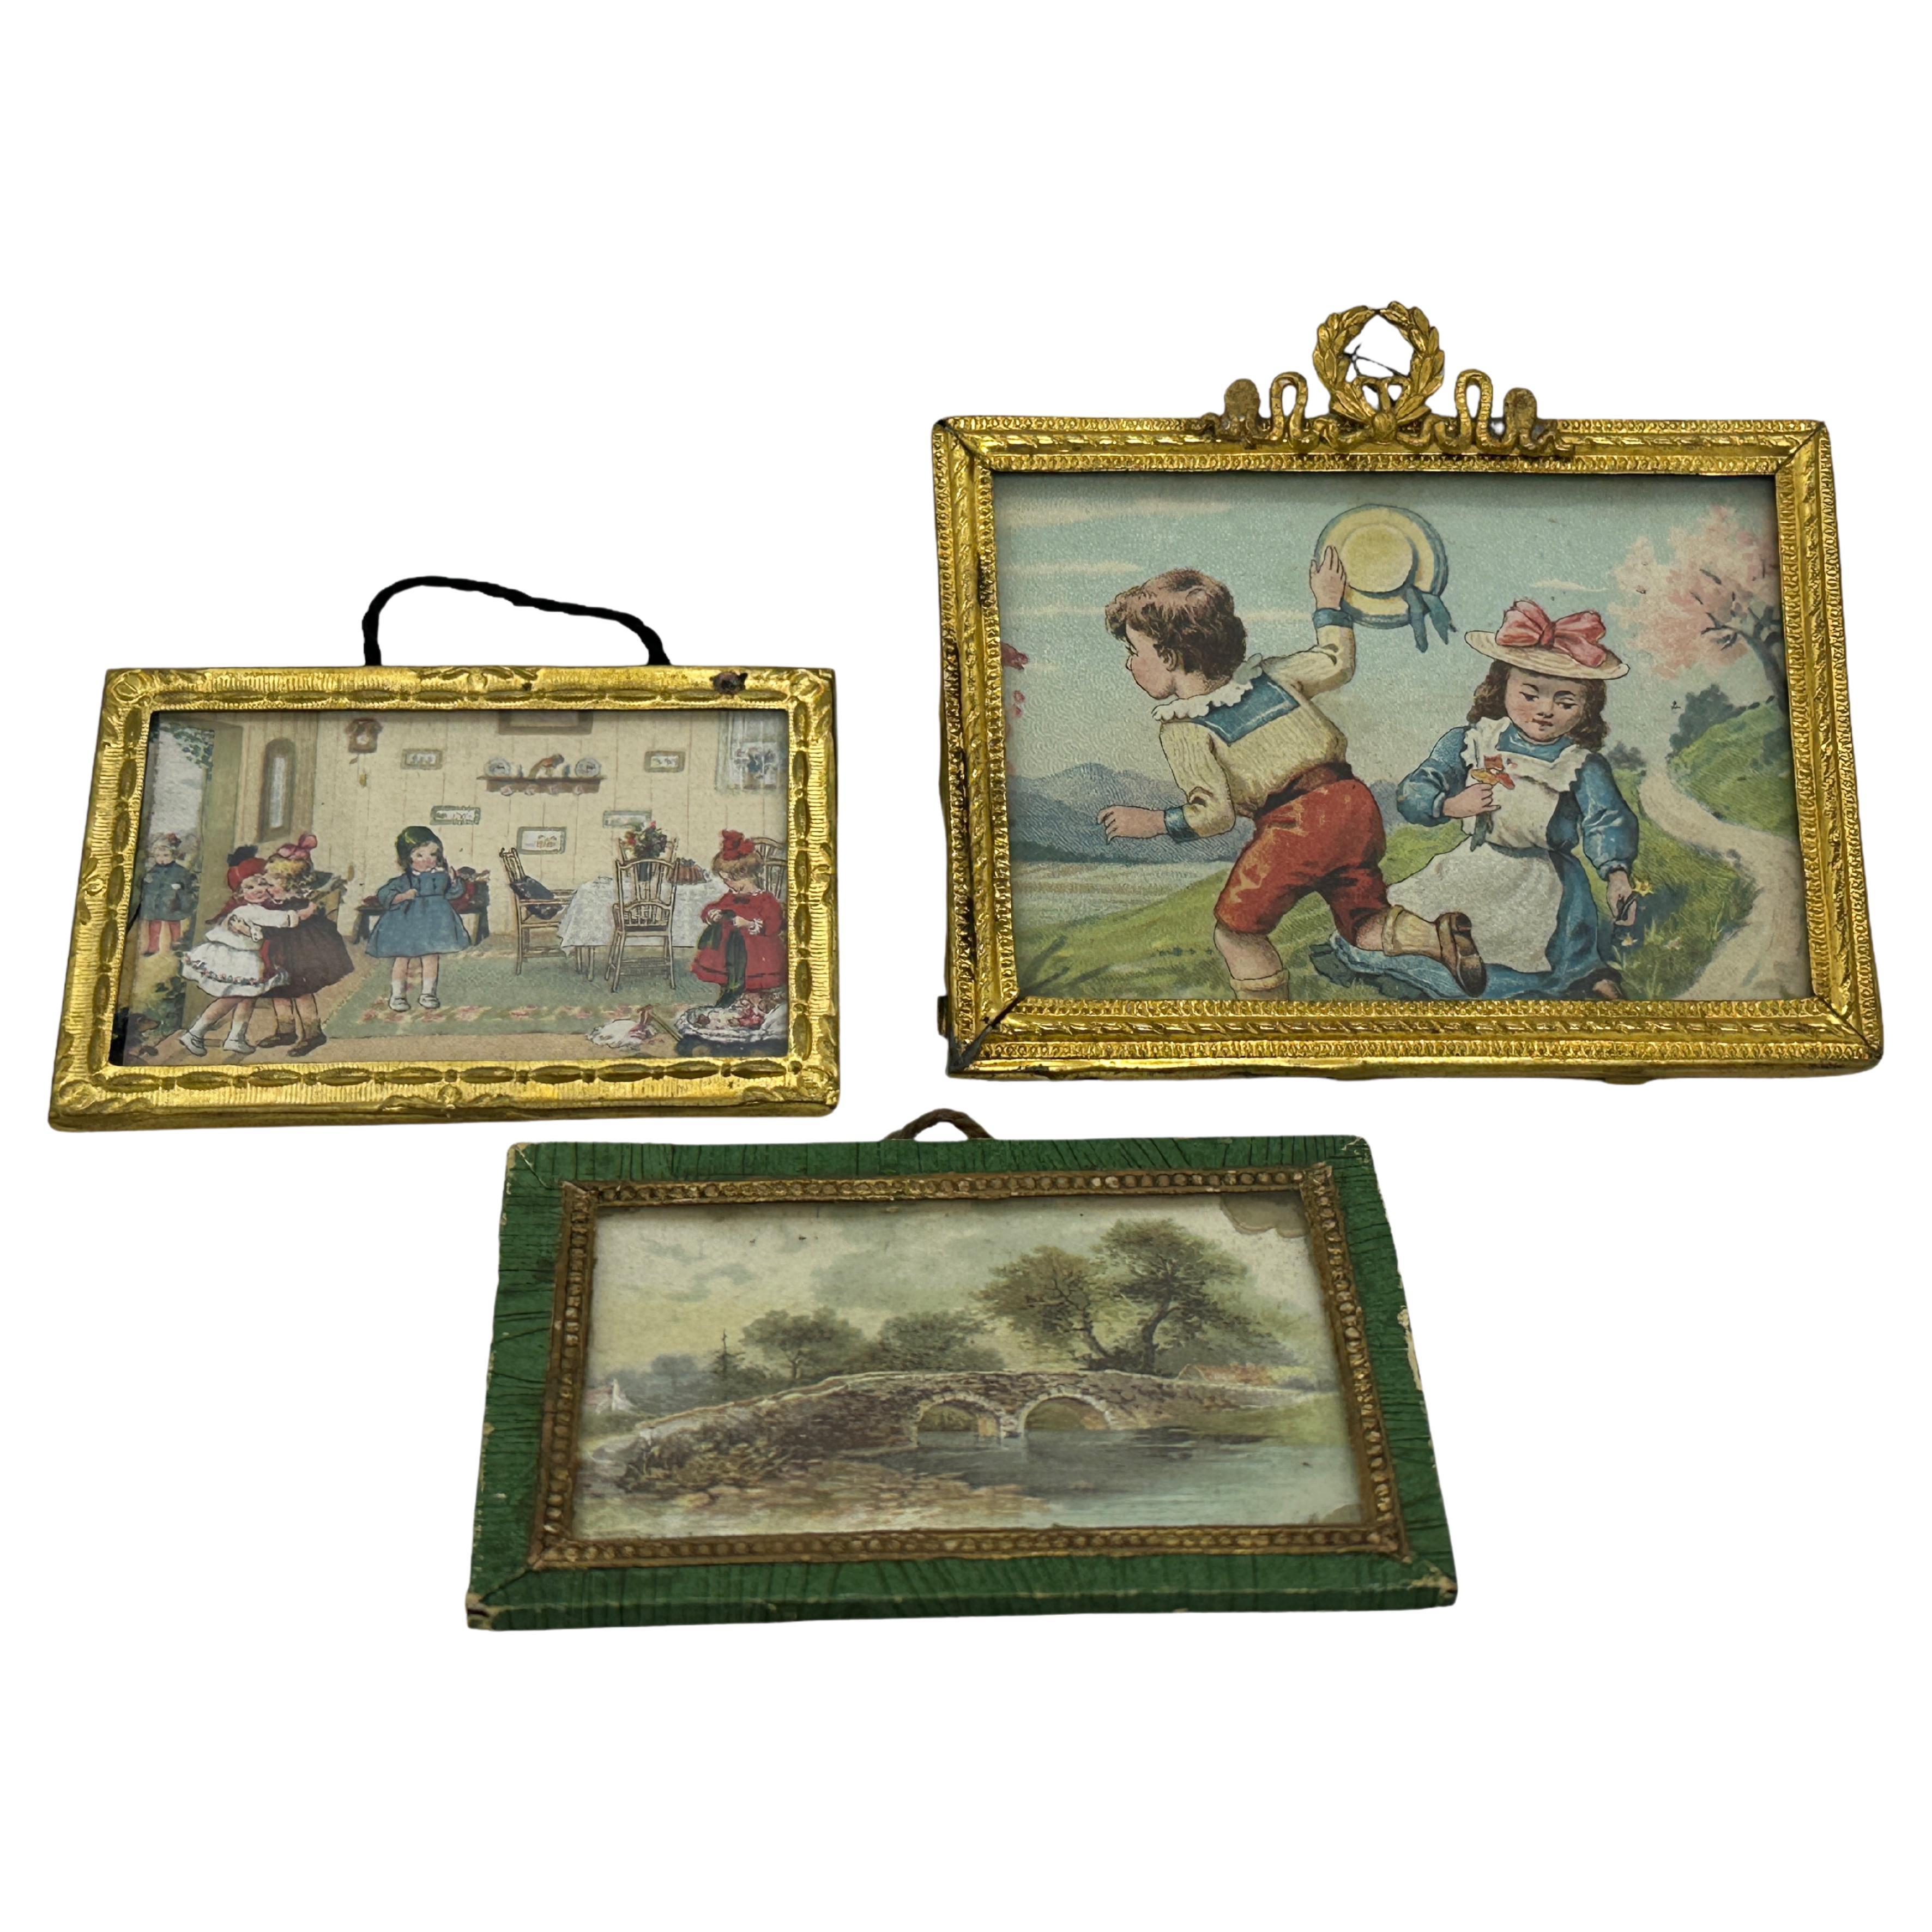 2 Cadres à photos Miniature Erhard & Söhne Antique German Dollhouse Toy 1900s